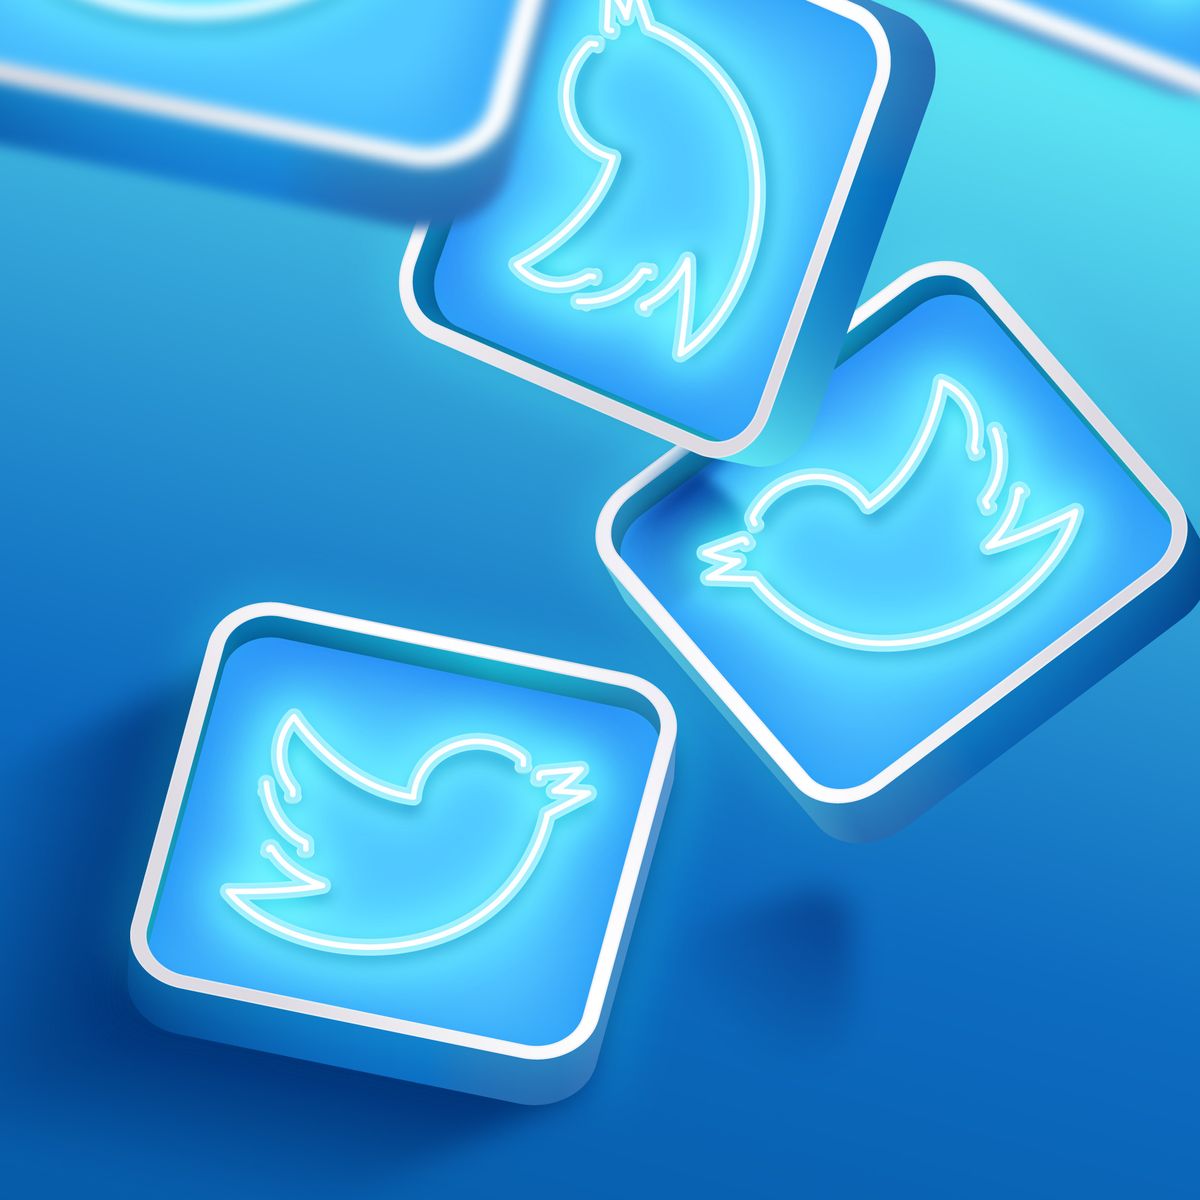 Novo recurso do Twitter vai permitir juntar fotos, vídeos e GIFs